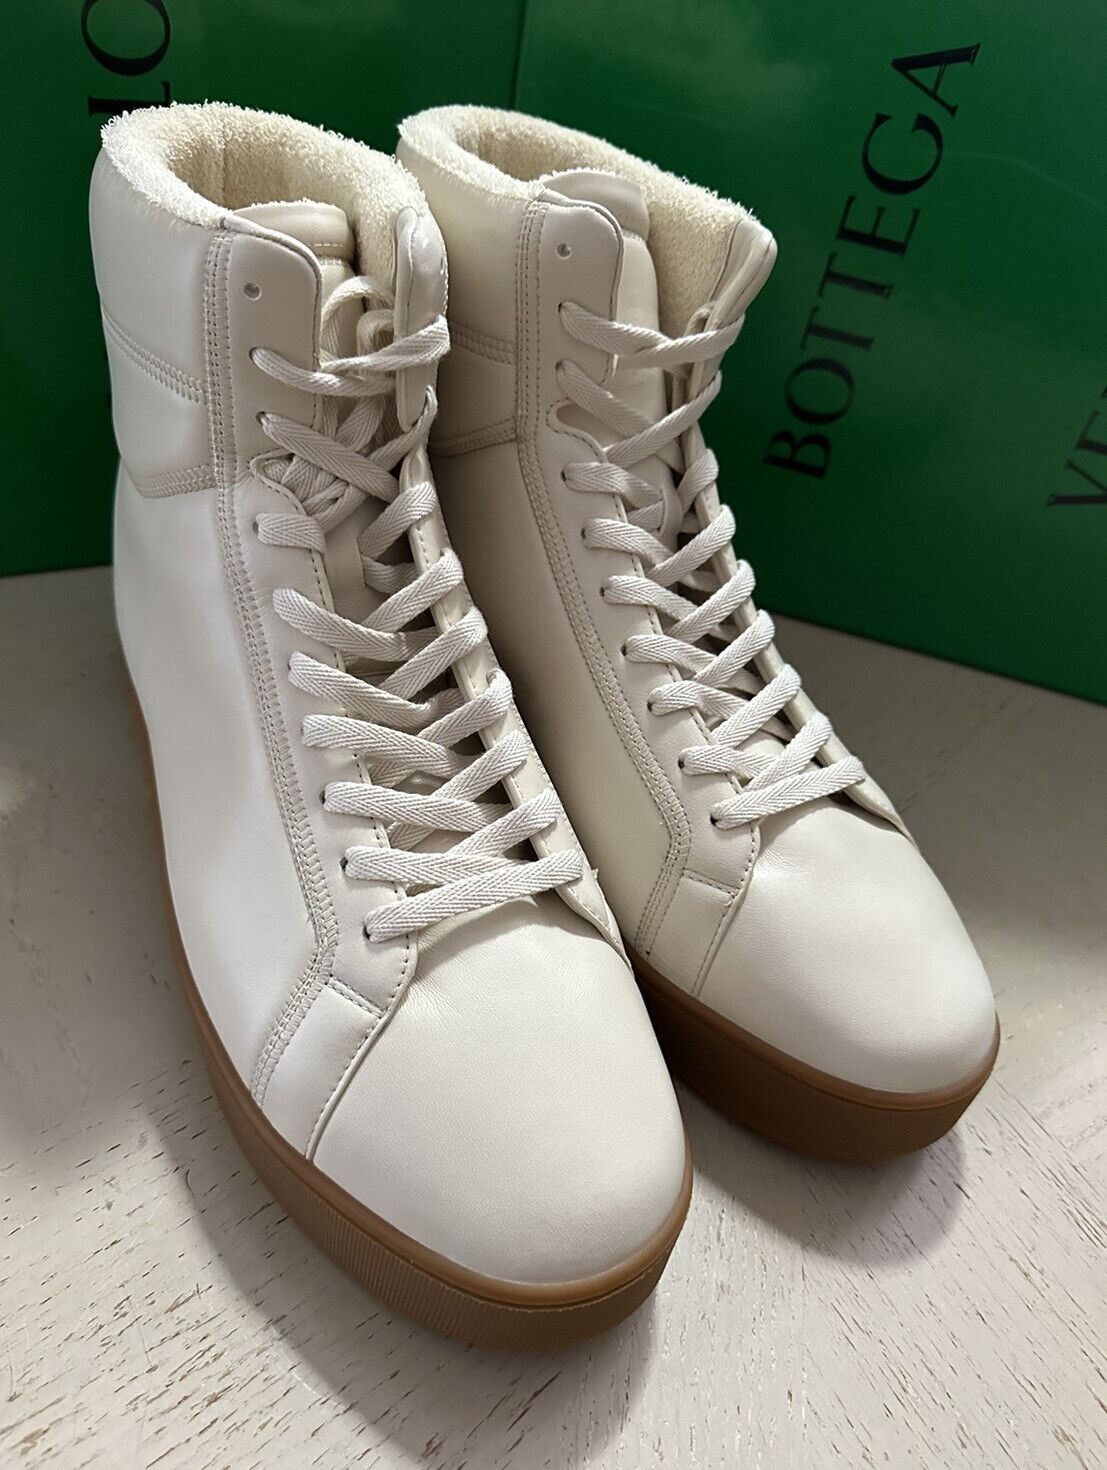 NIB 950 $ Bottega Veneta Herren-Leder-High-Top-Sneaker-Schuhe Weiß 8 US/41 Eu